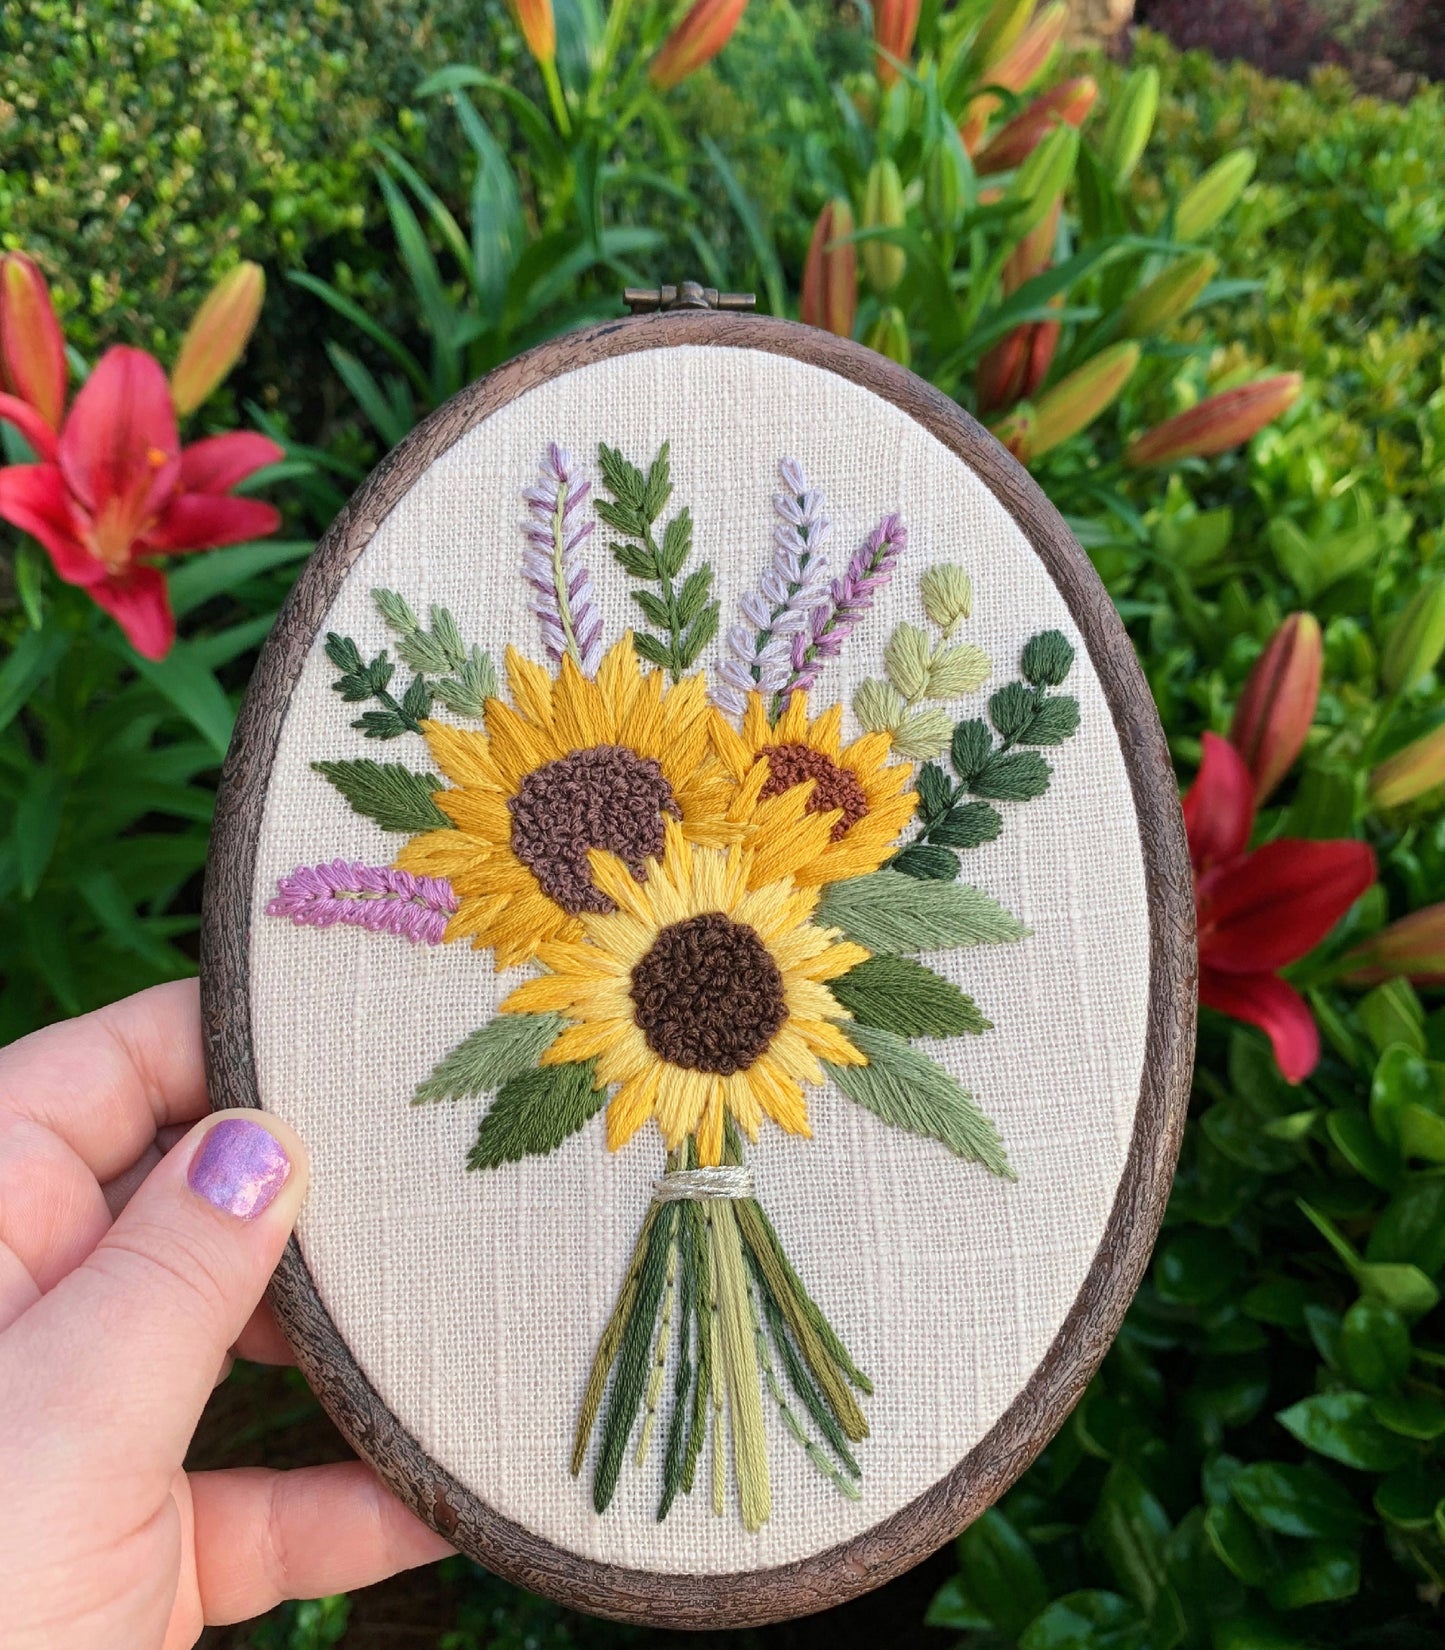 PDF Pattern - Sunflower Bouquet, Intermediate Embroidery Pattern